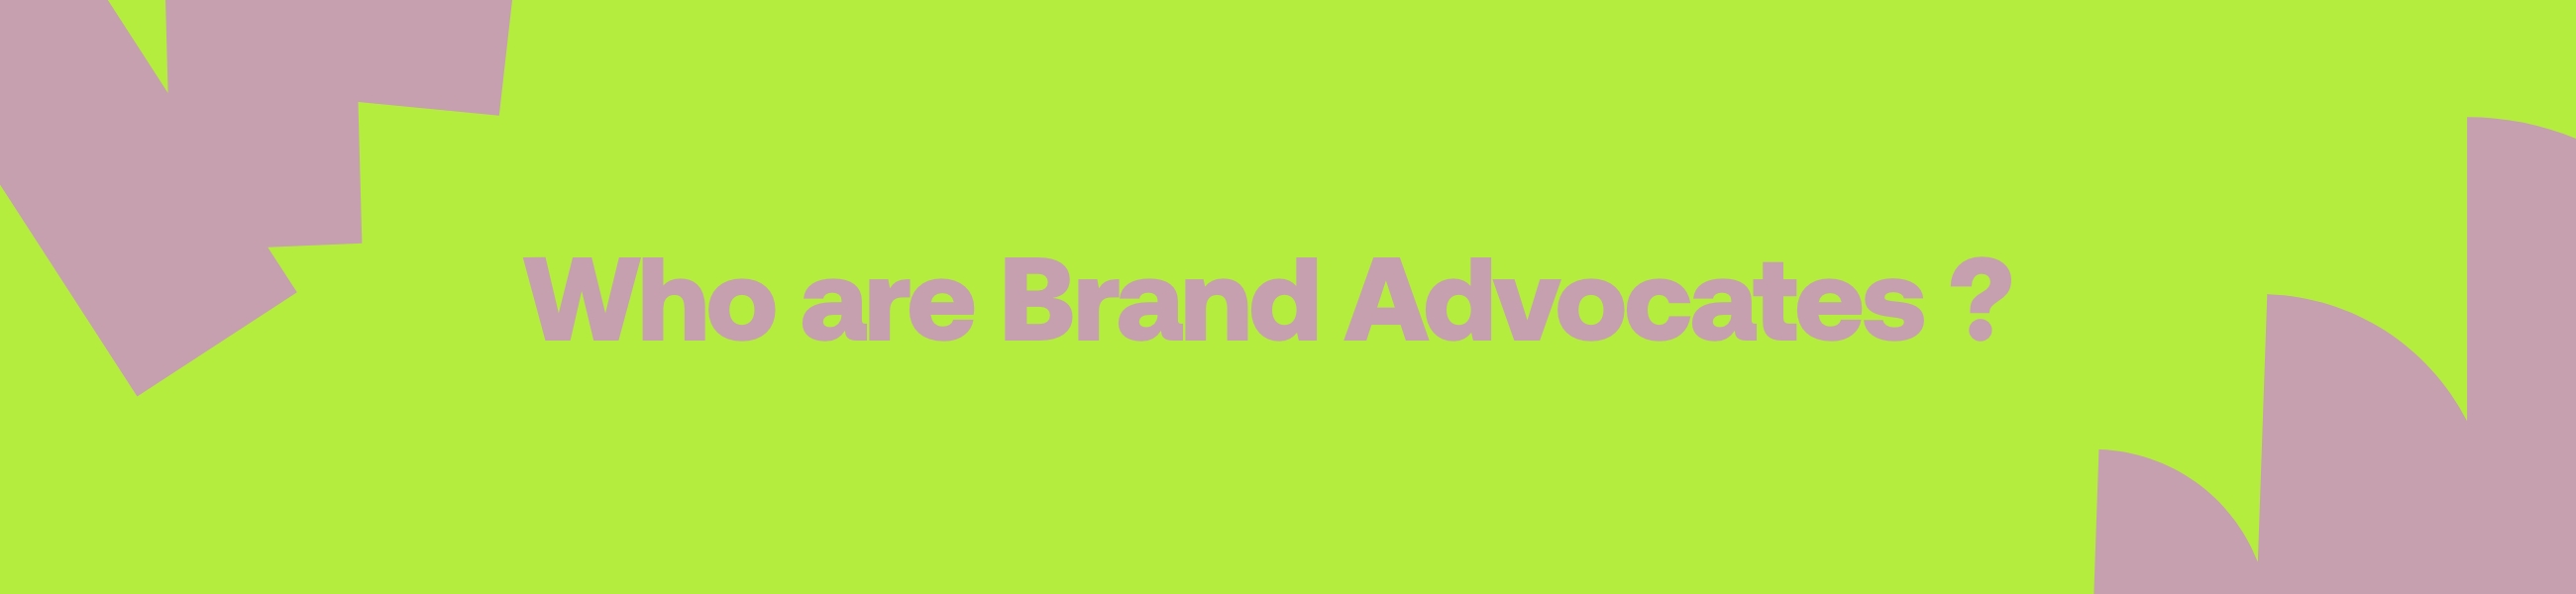 Who-are-Brand-Advocates